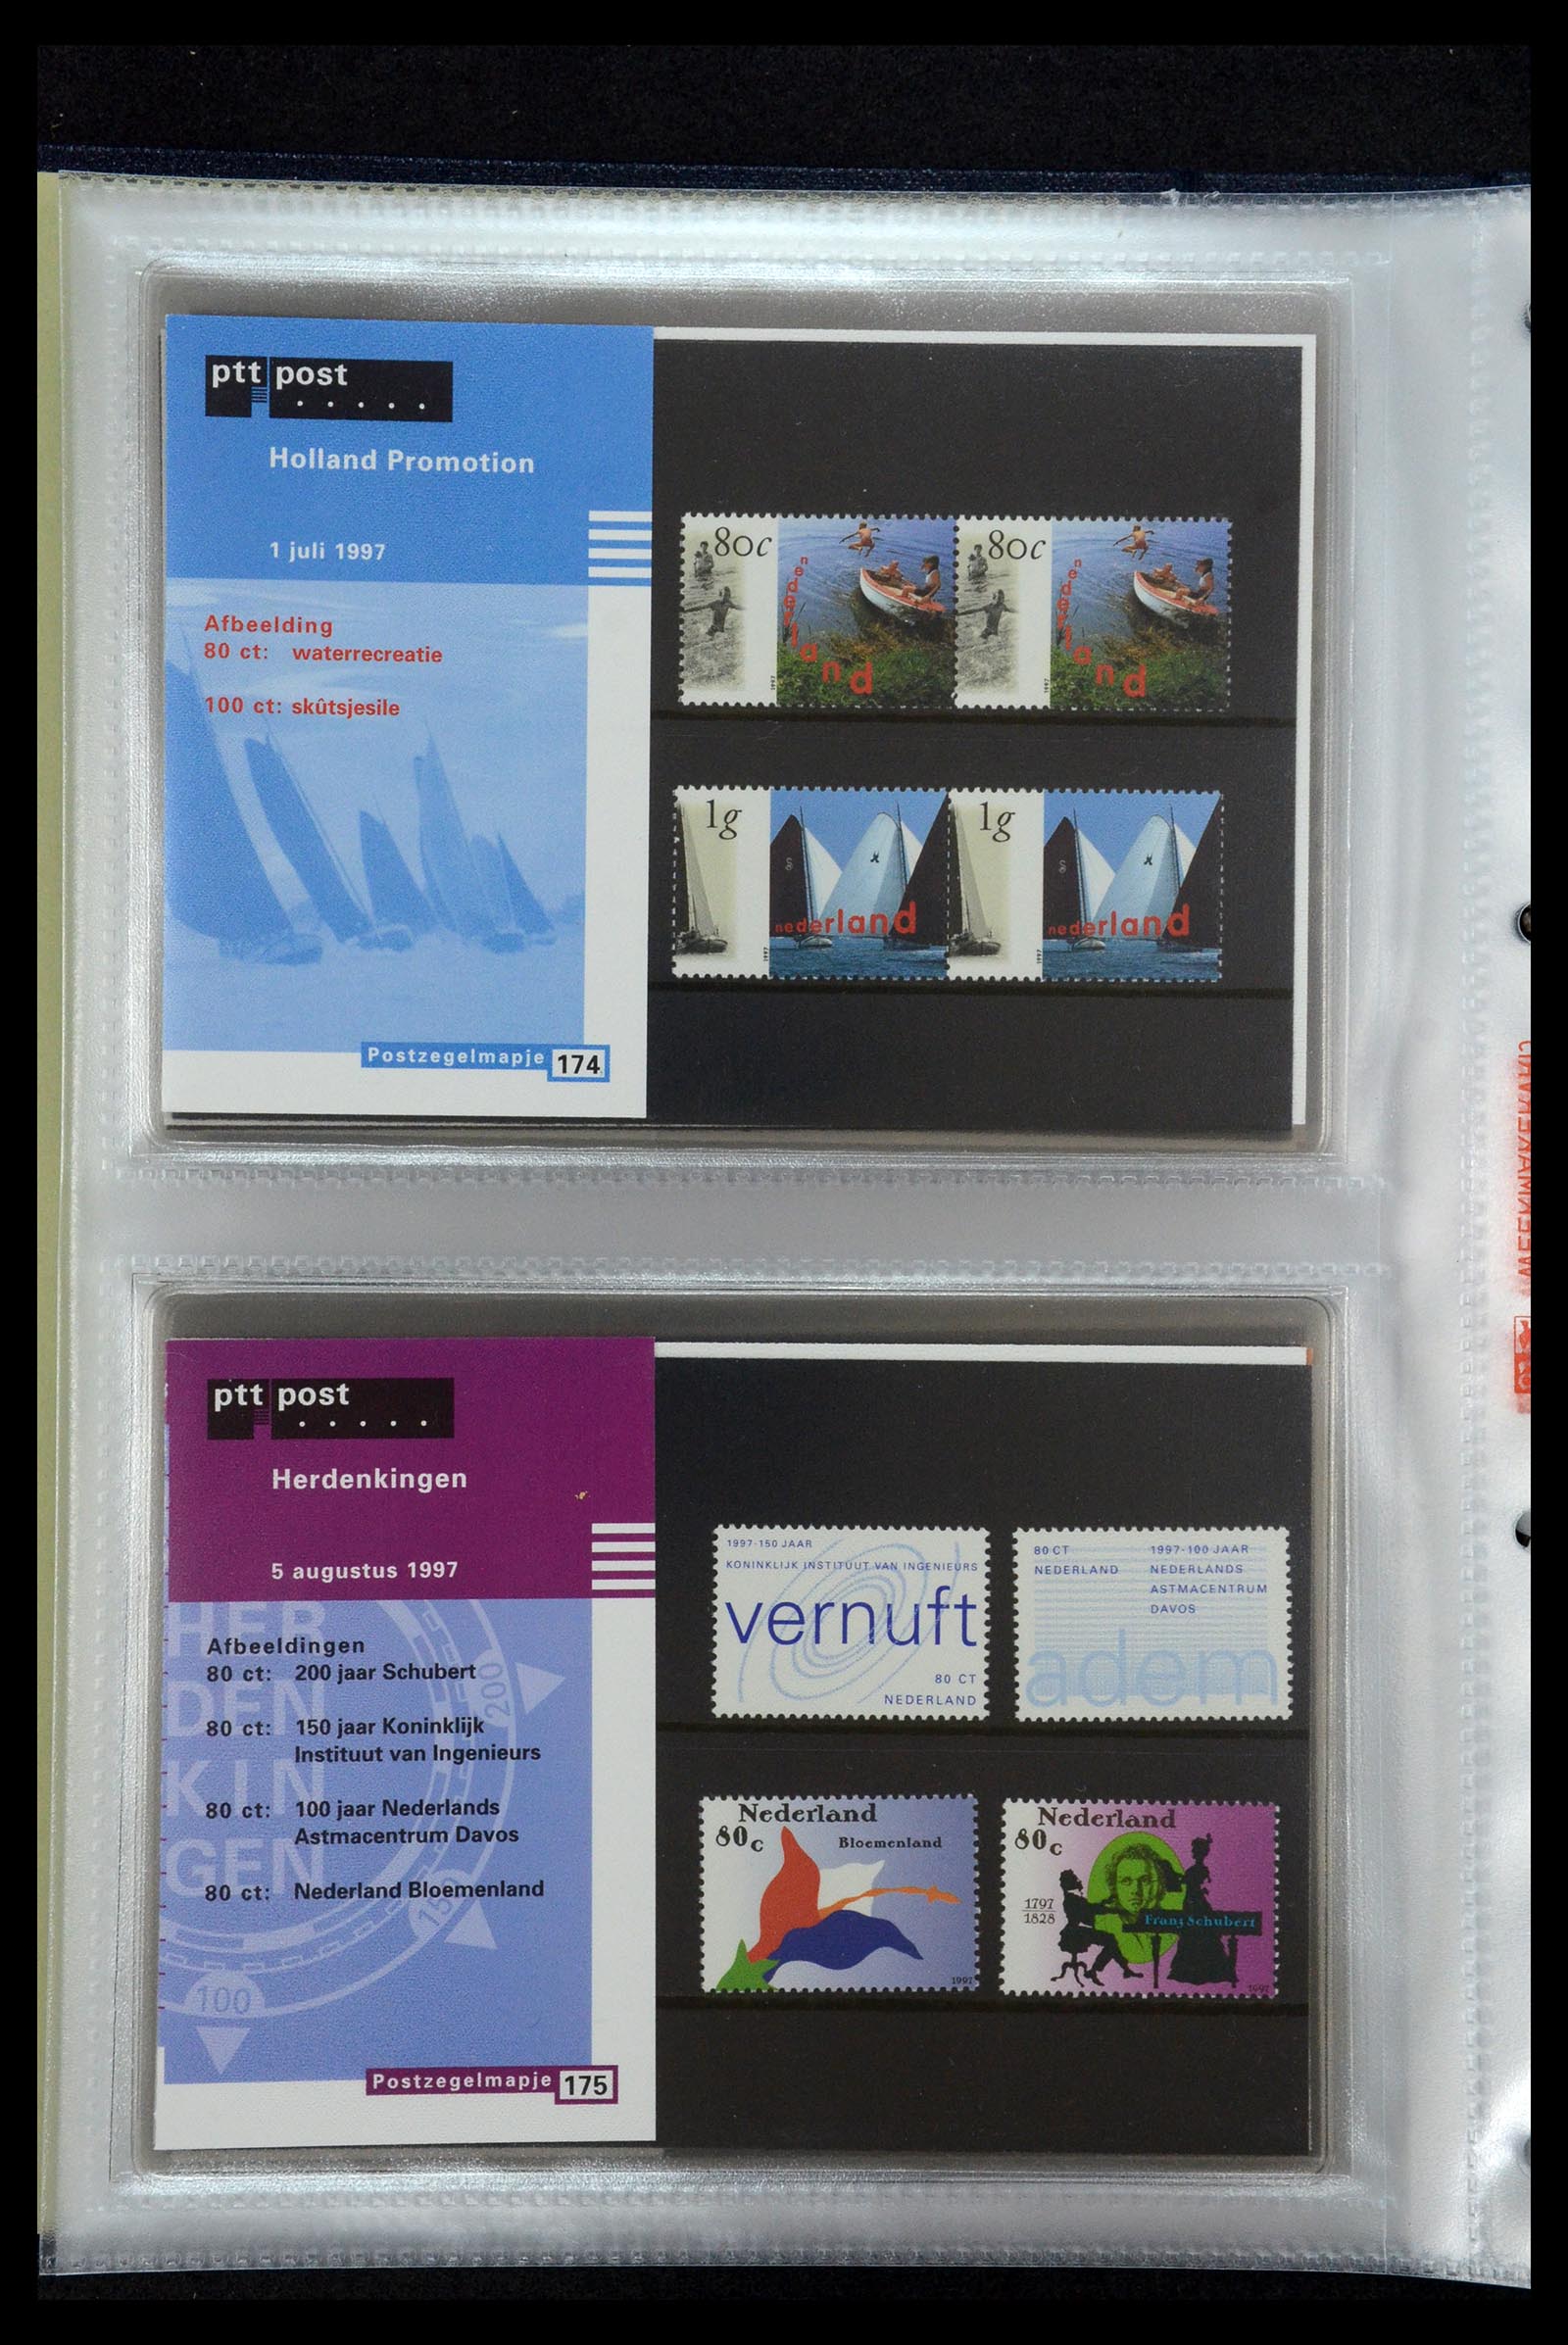 35144 090 - Stamp Collection 35144 Netherlands PTT presentation packs 1982-2021!